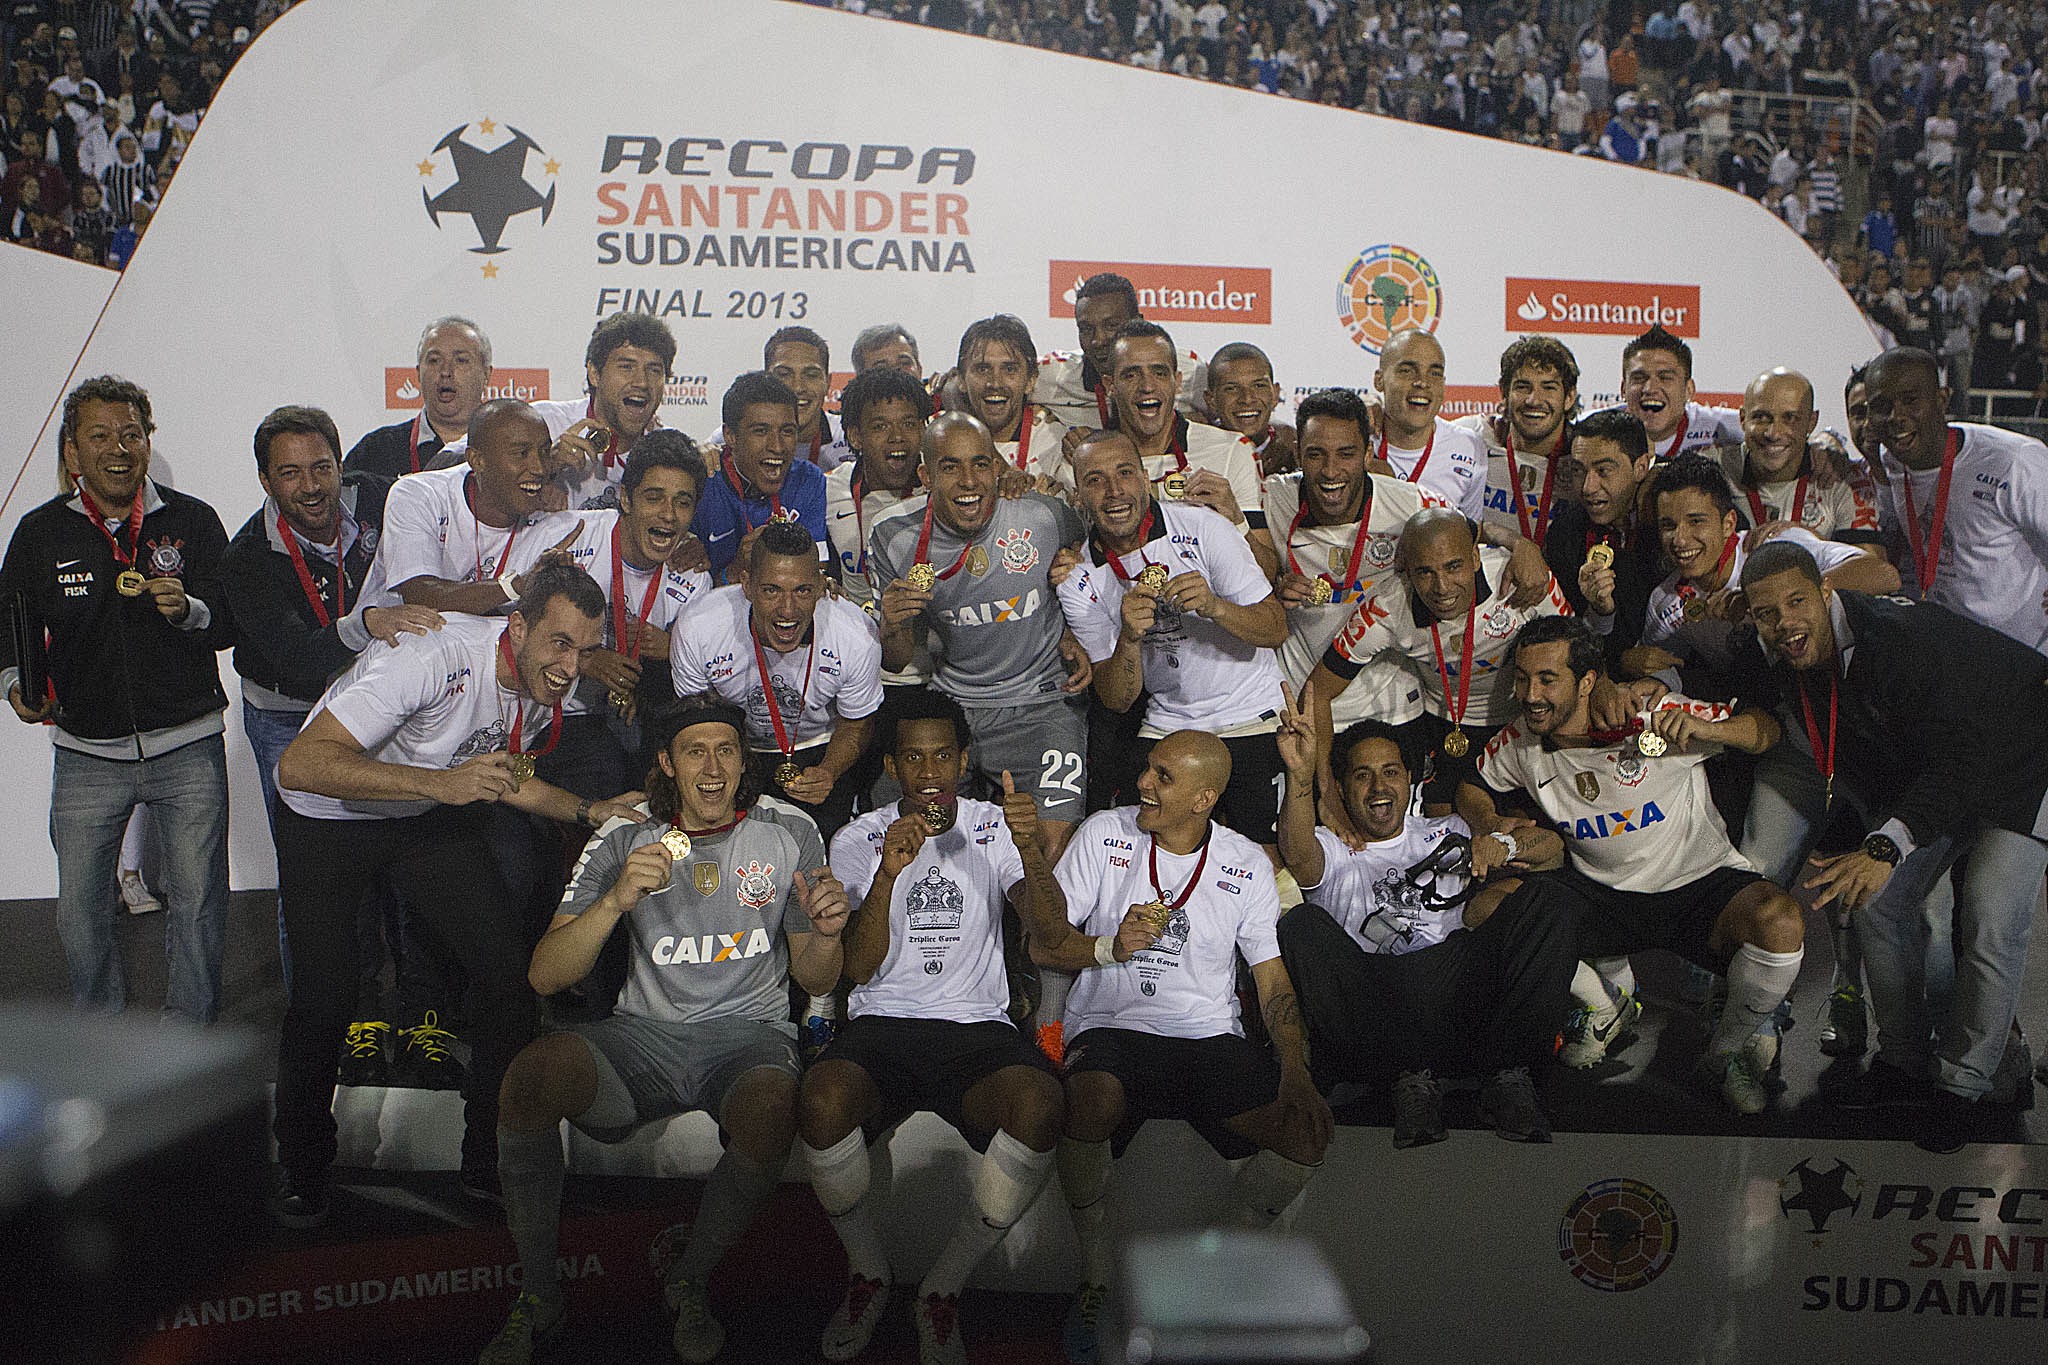 Obrigado, VP! Corinthians continua como último sul-americano